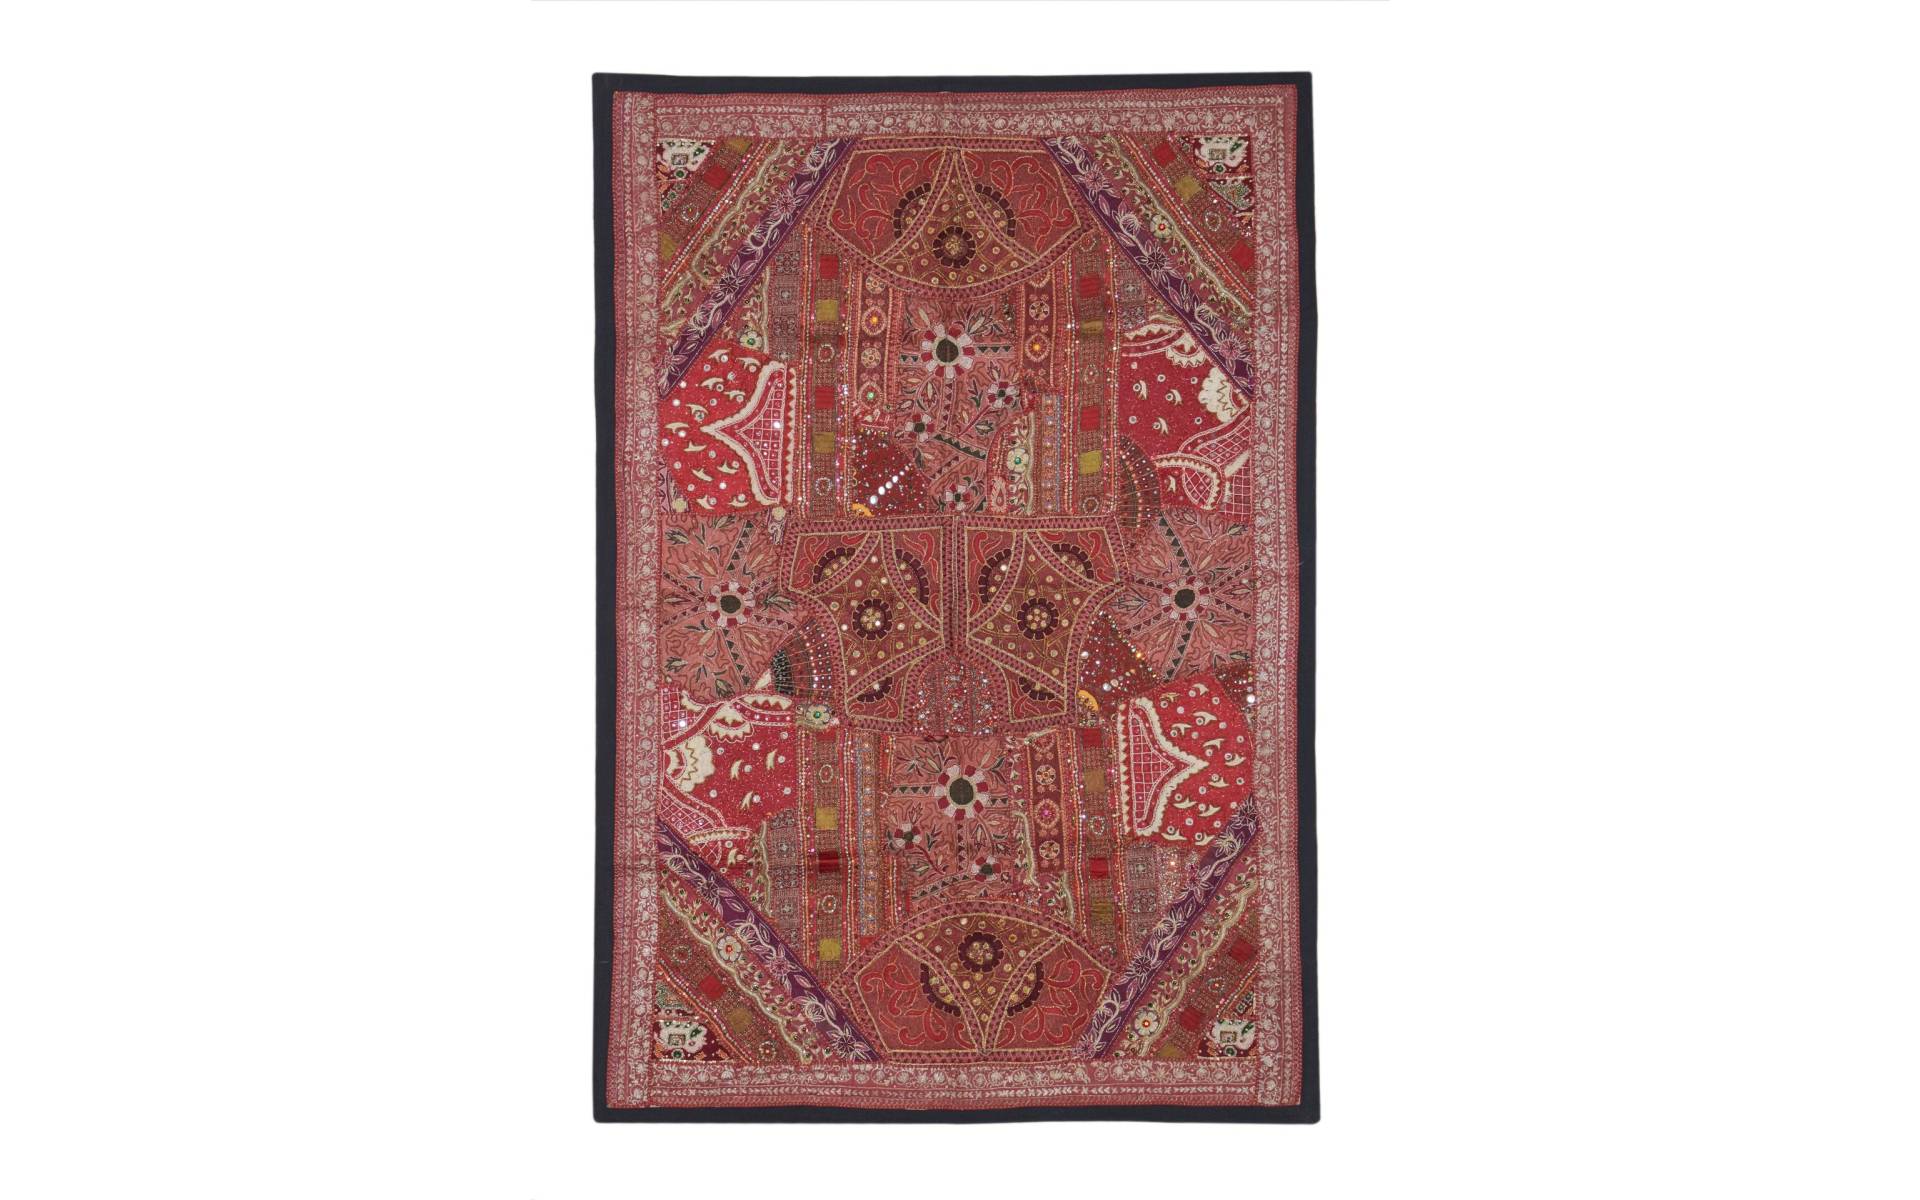 Unikátna tapiséria z Rajastanu, červená, ručné vyšívanie, 156x106cm